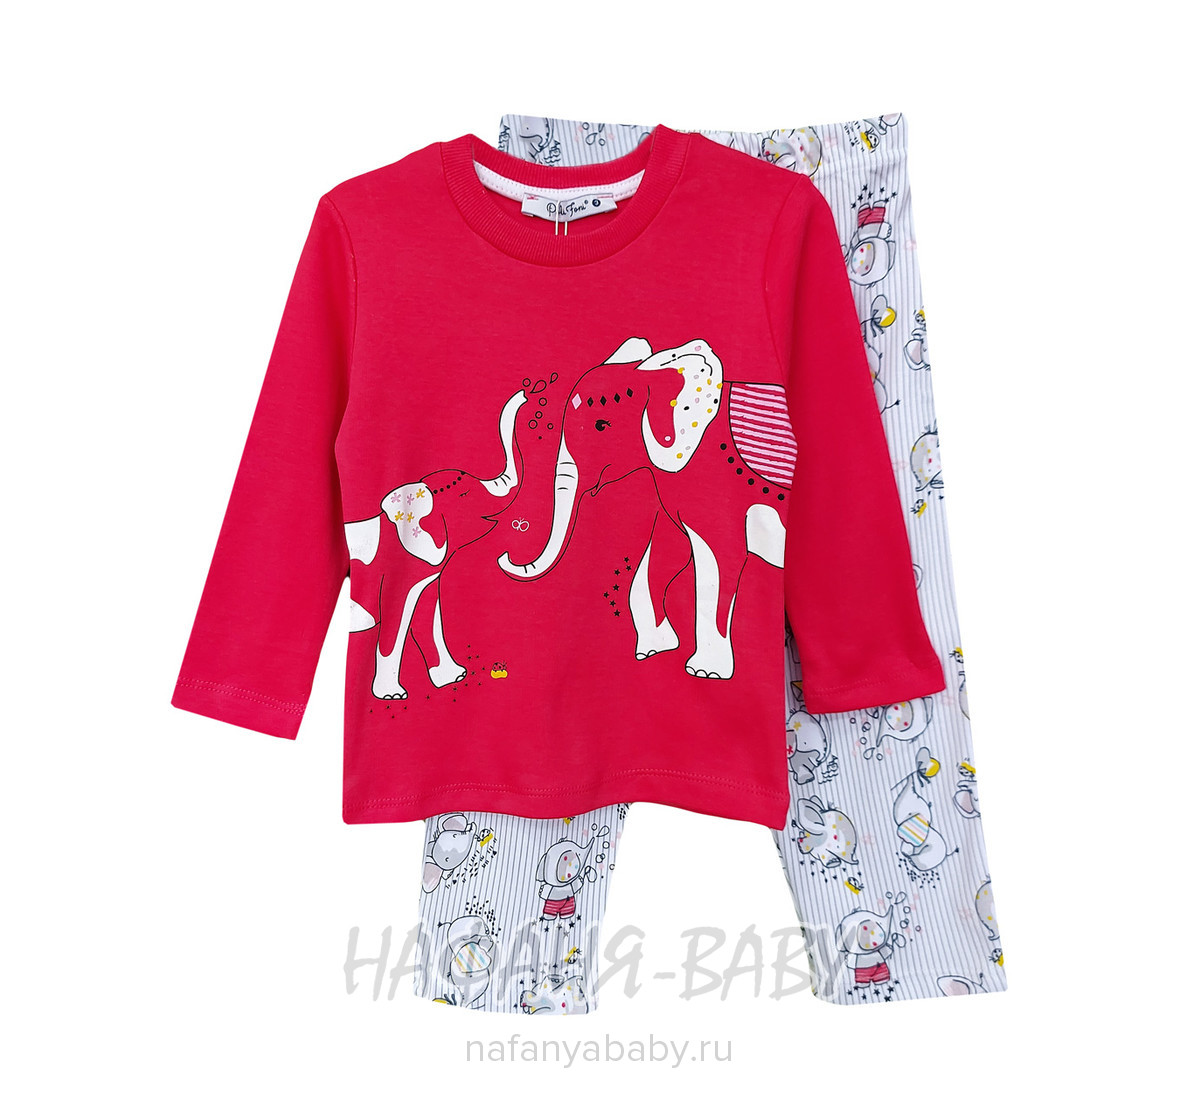 Пижама для девочки СЛОНИКИ POLI FONI арт: 305, 5-9 лет, 1-4 года, цвет малиновый, оптом Турция